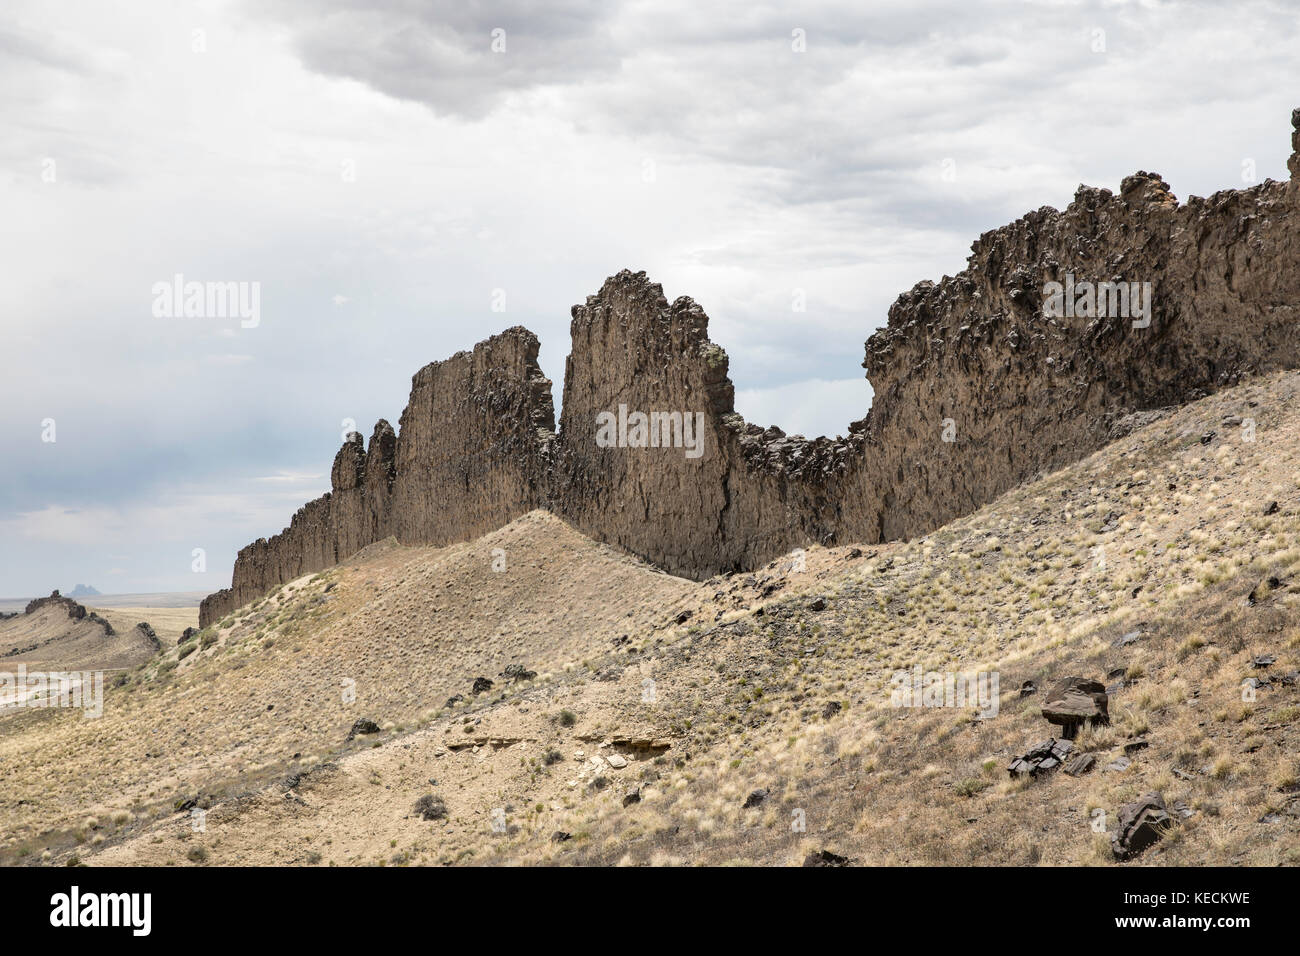 Un dyke de lamprophyre mène à Shiprock, un bouchon volcanique, New Mexico, USA Banque D'Images